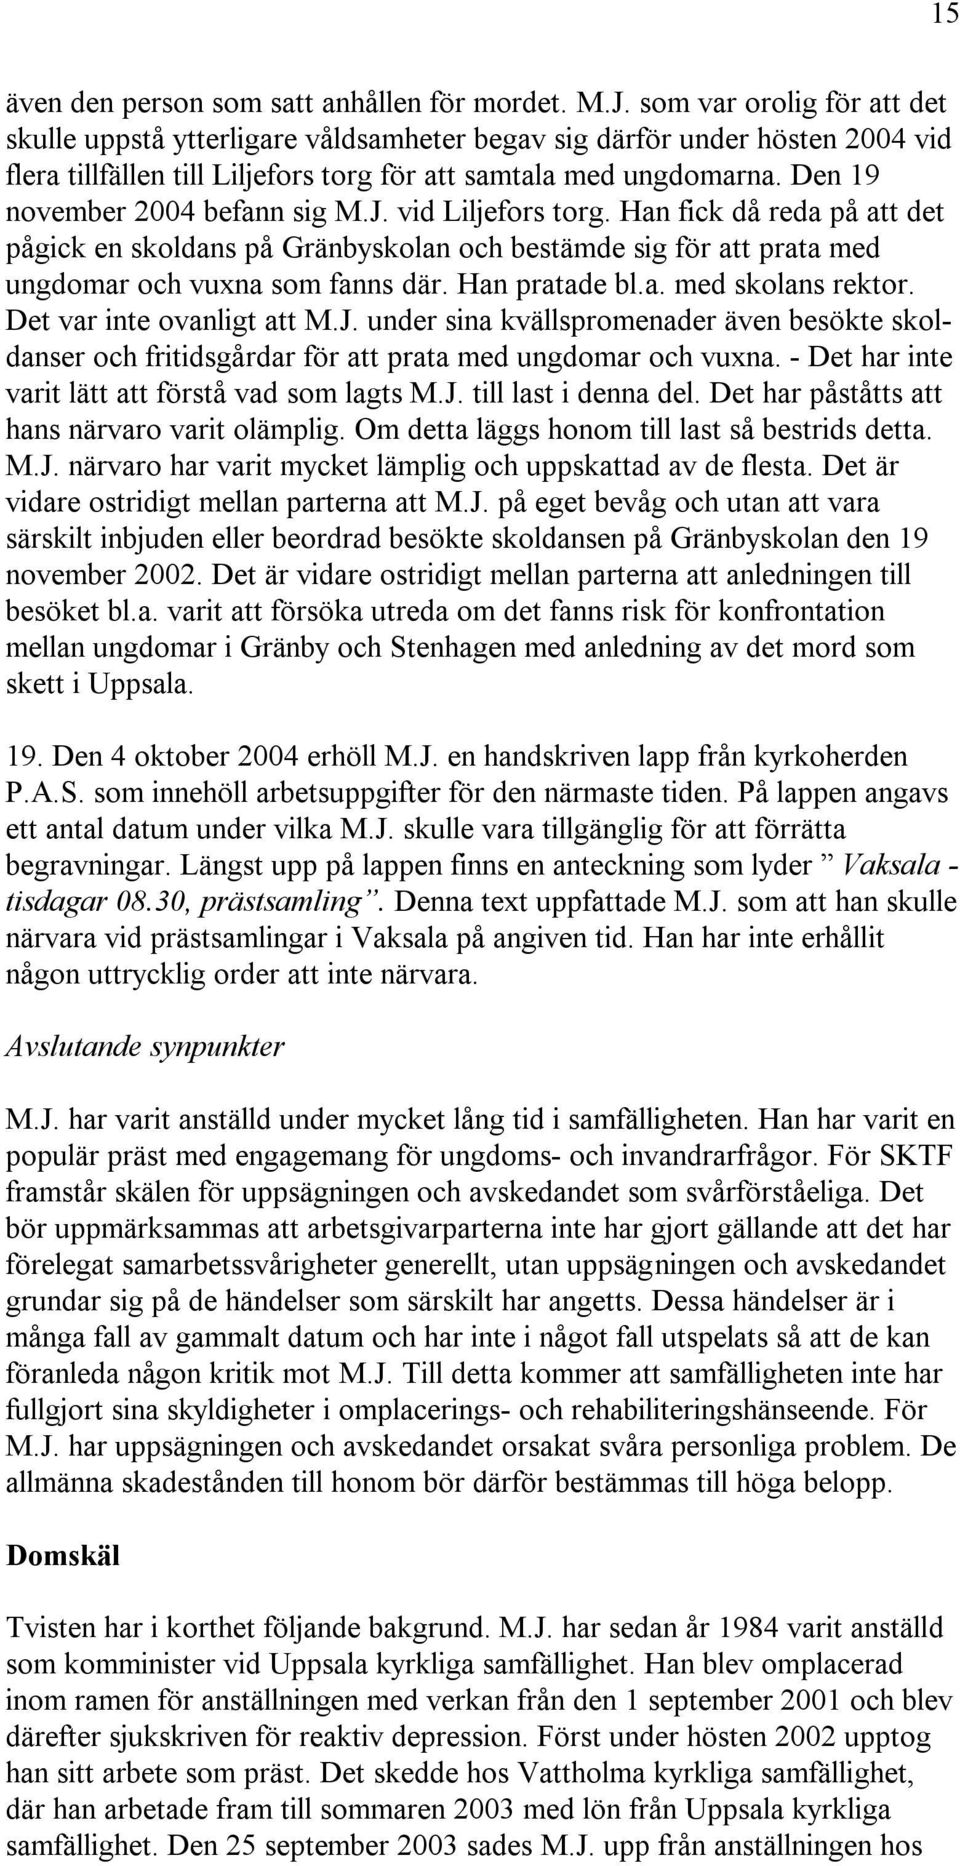 Den 19 november 2004 befann sig M.J. vid Liljefors torg. Han fick då reda på att det pågick en skoldans på Gränbyskolan och bestämde sig för att prata med ungdomar och vuxna som fanns där.